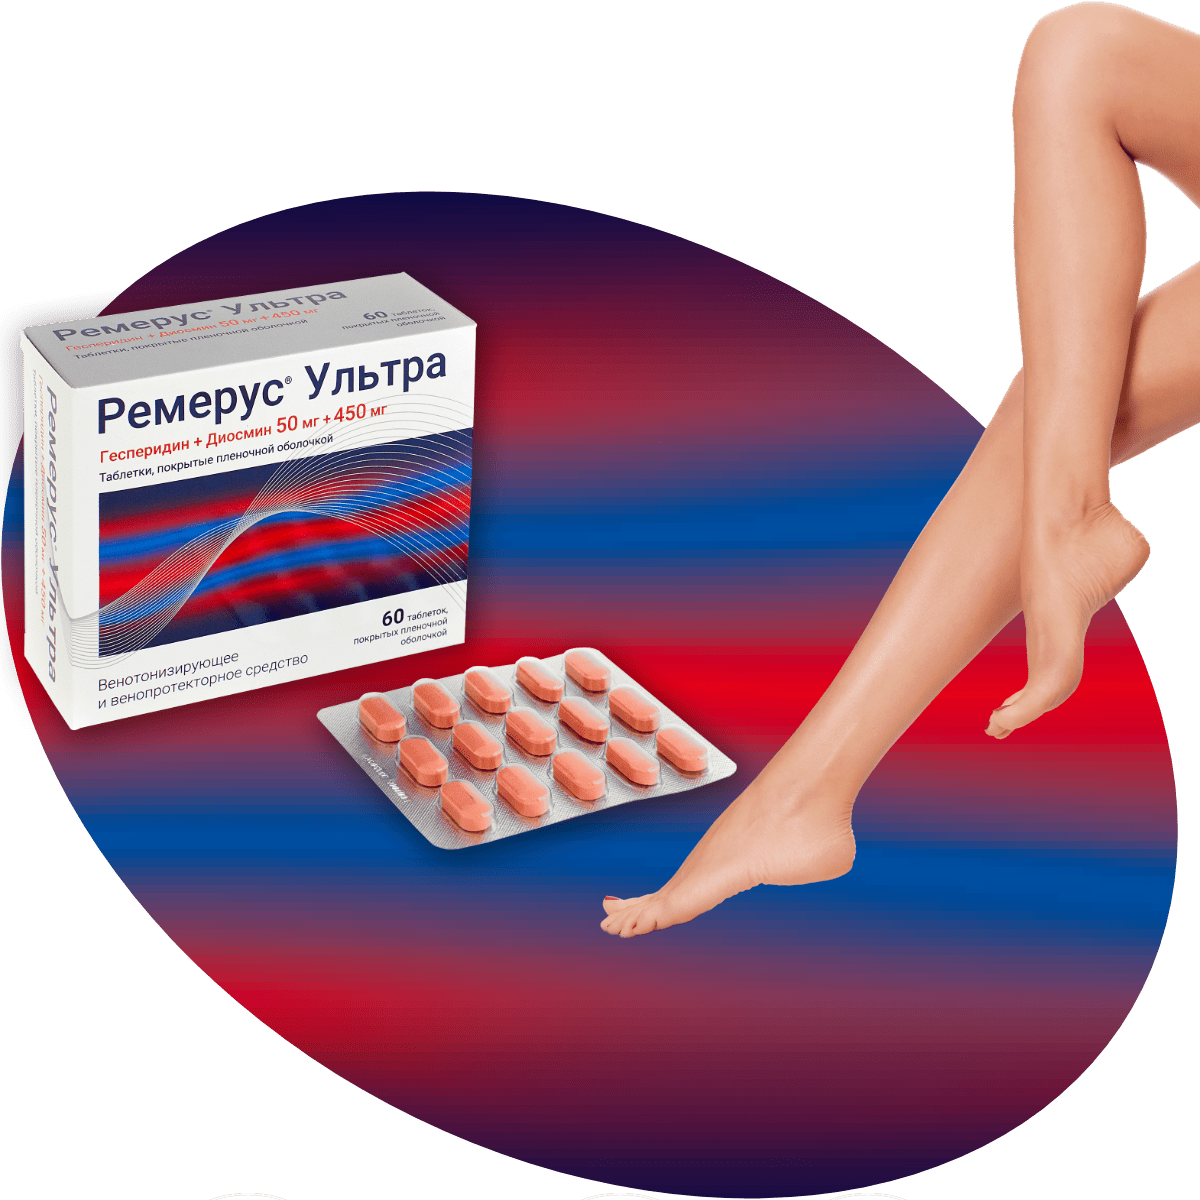 Лекарственное средство для уменьшения варикоза